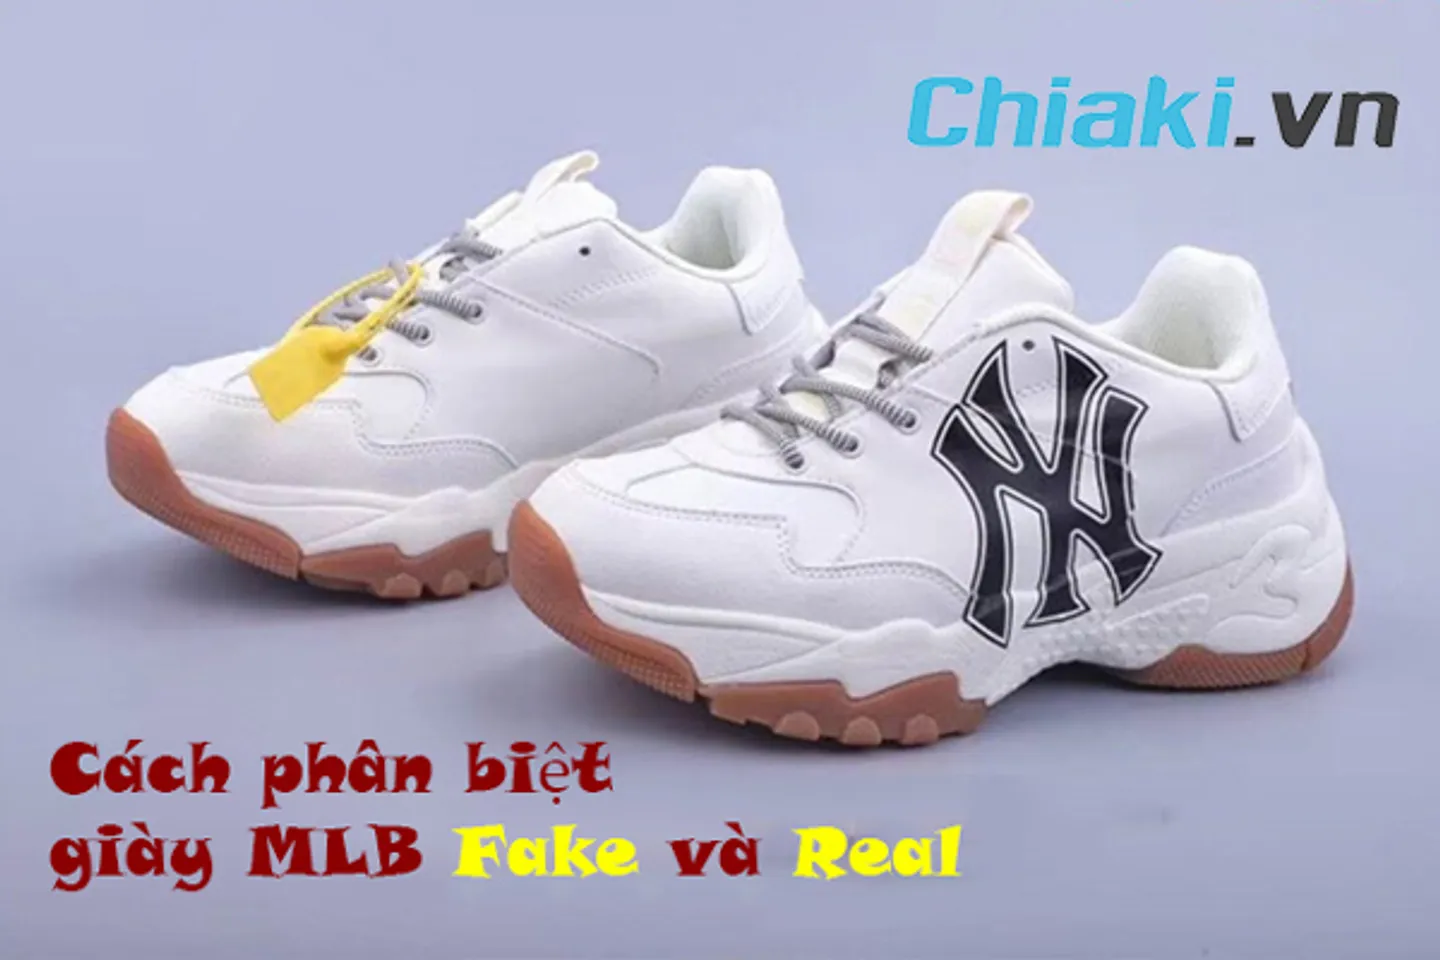 Mua giày MLB chính hãng hot trend theo xu hướng mới nhất